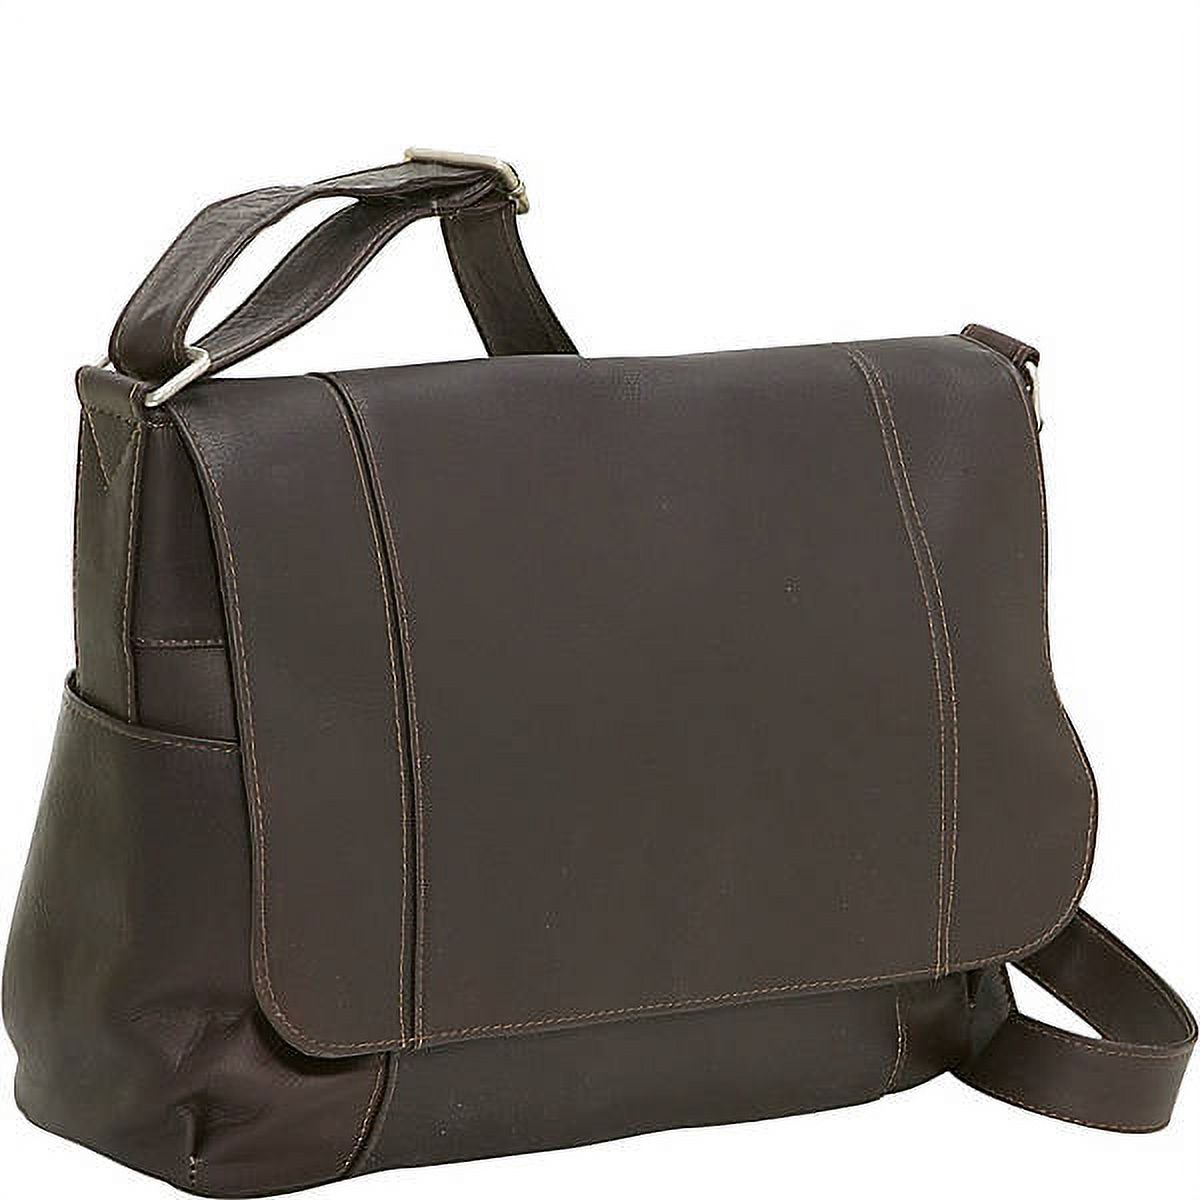 Le Donne Leather Flap Over Shoulder Bag LD-5004 - image 1 of 4